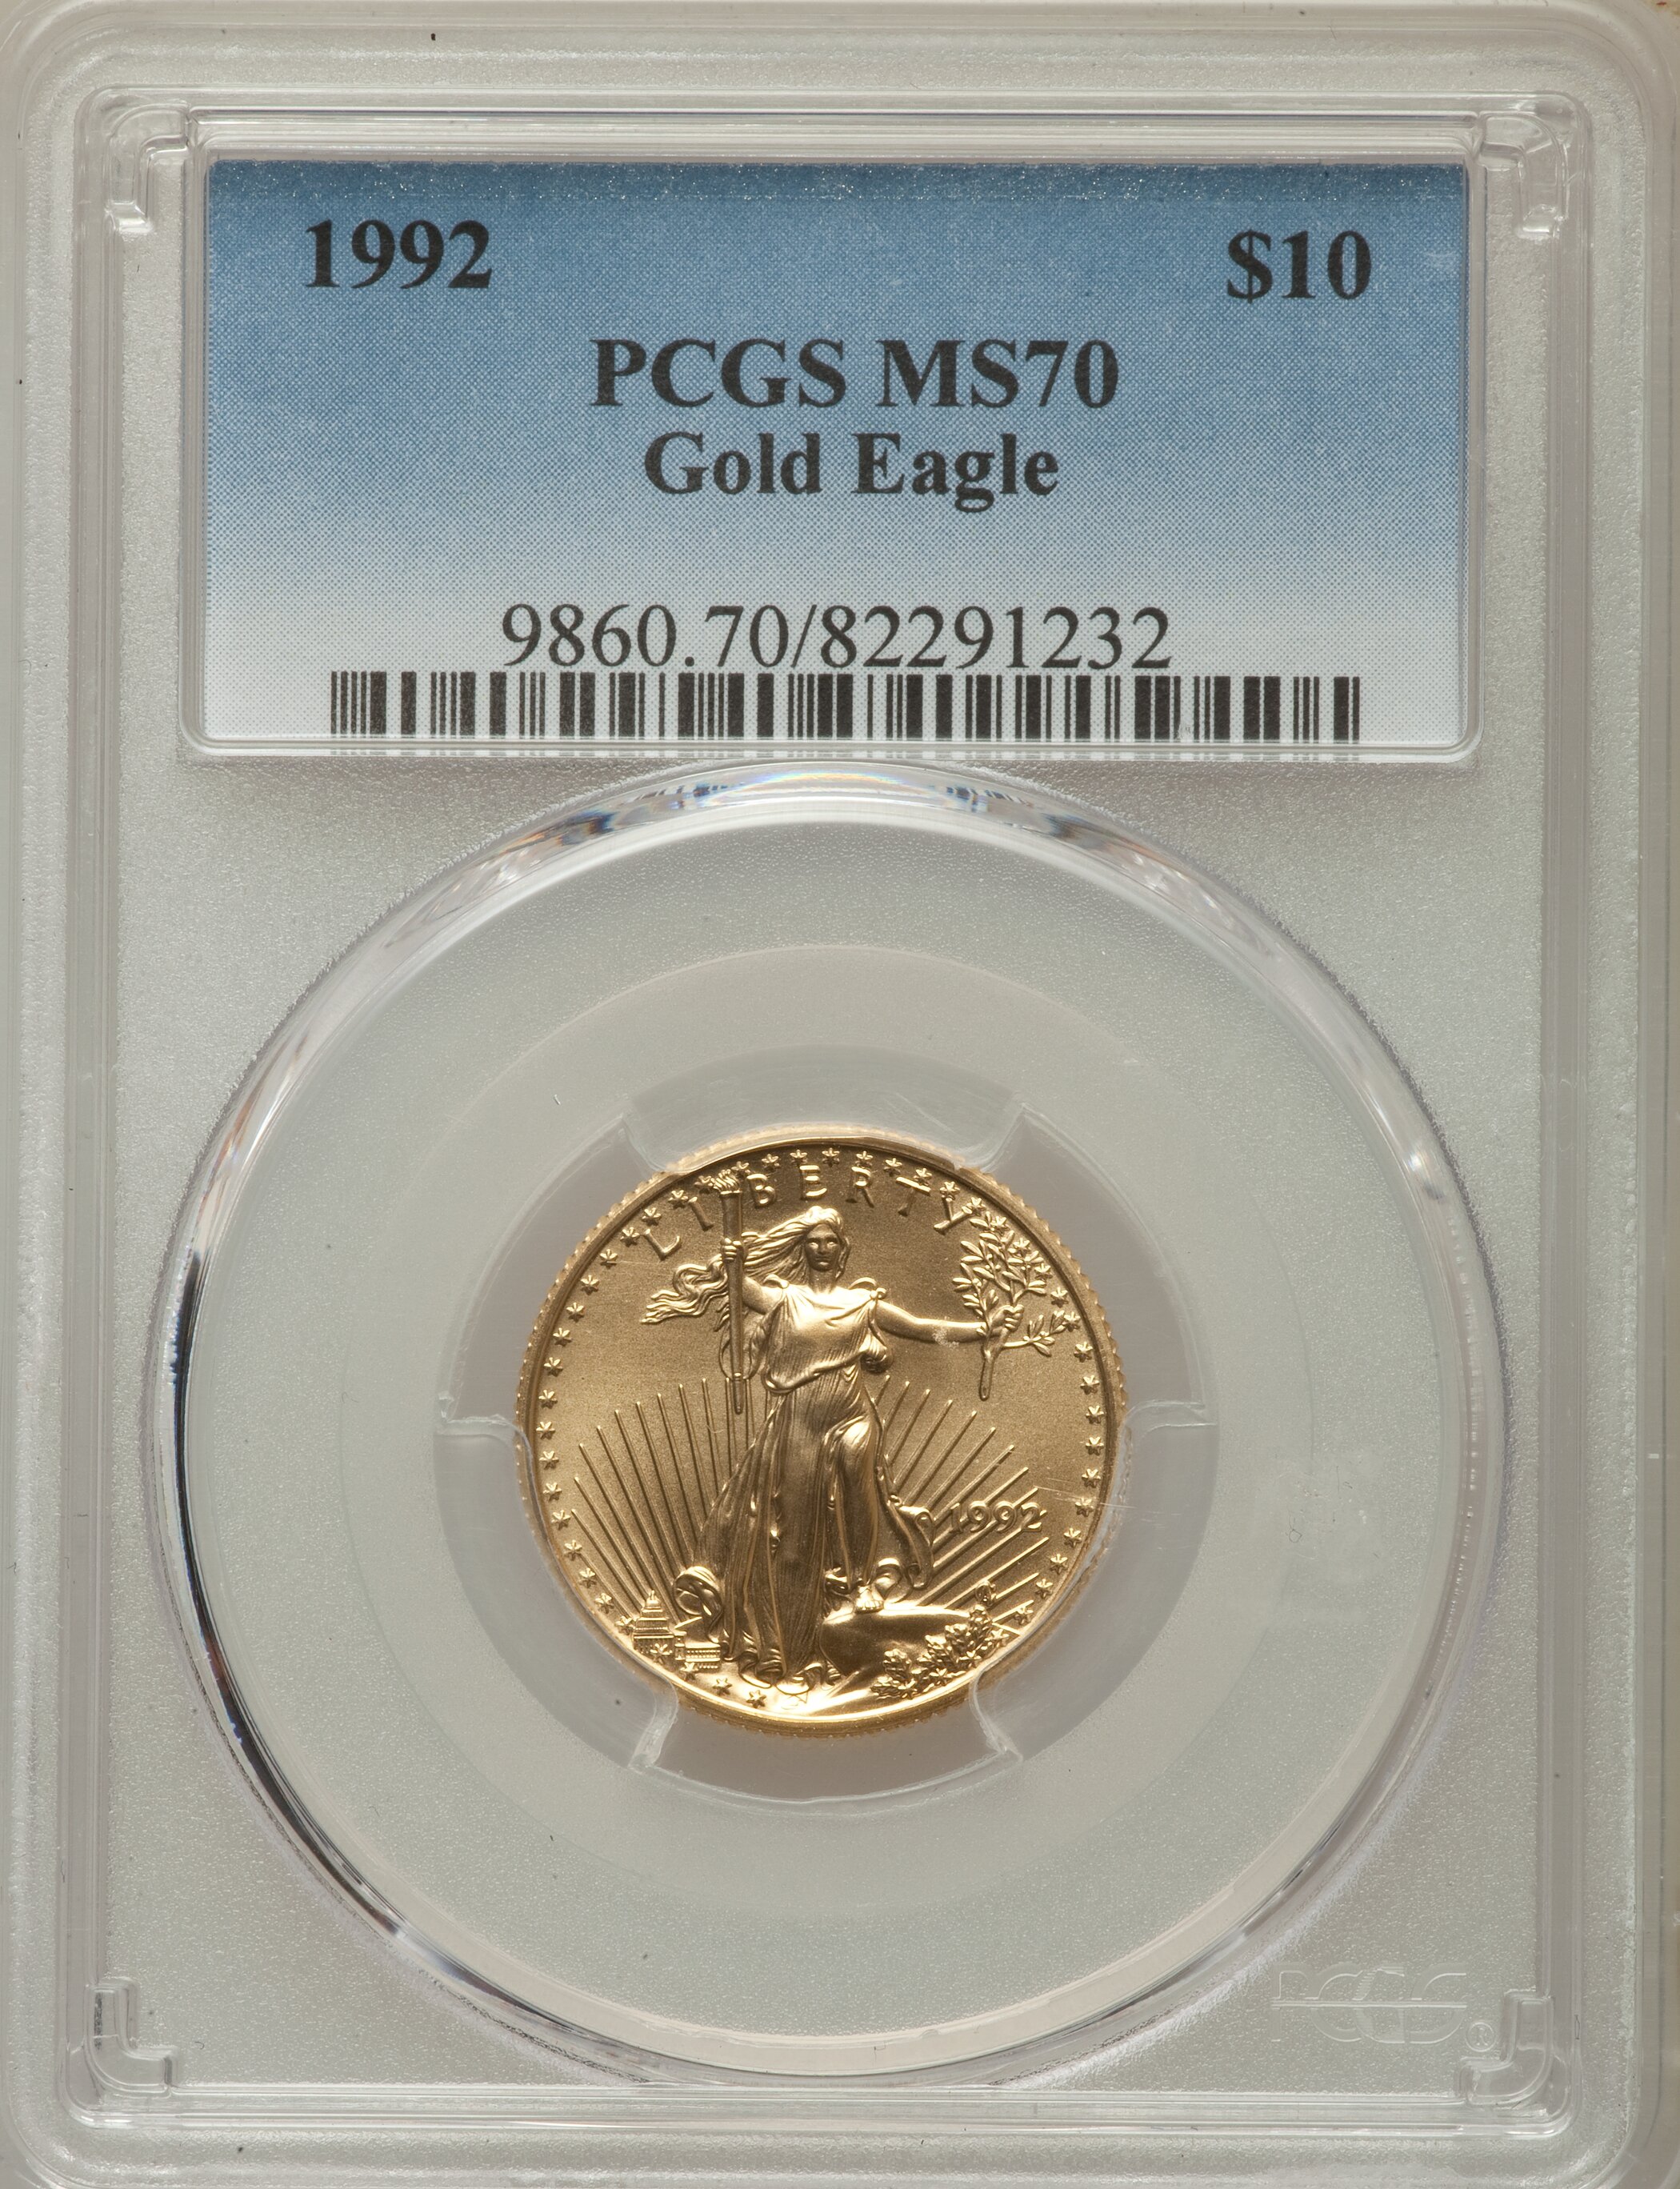 販売廉価1992 PCGS MS70 10$ GOLD EAGLE 1/4oz コレクション